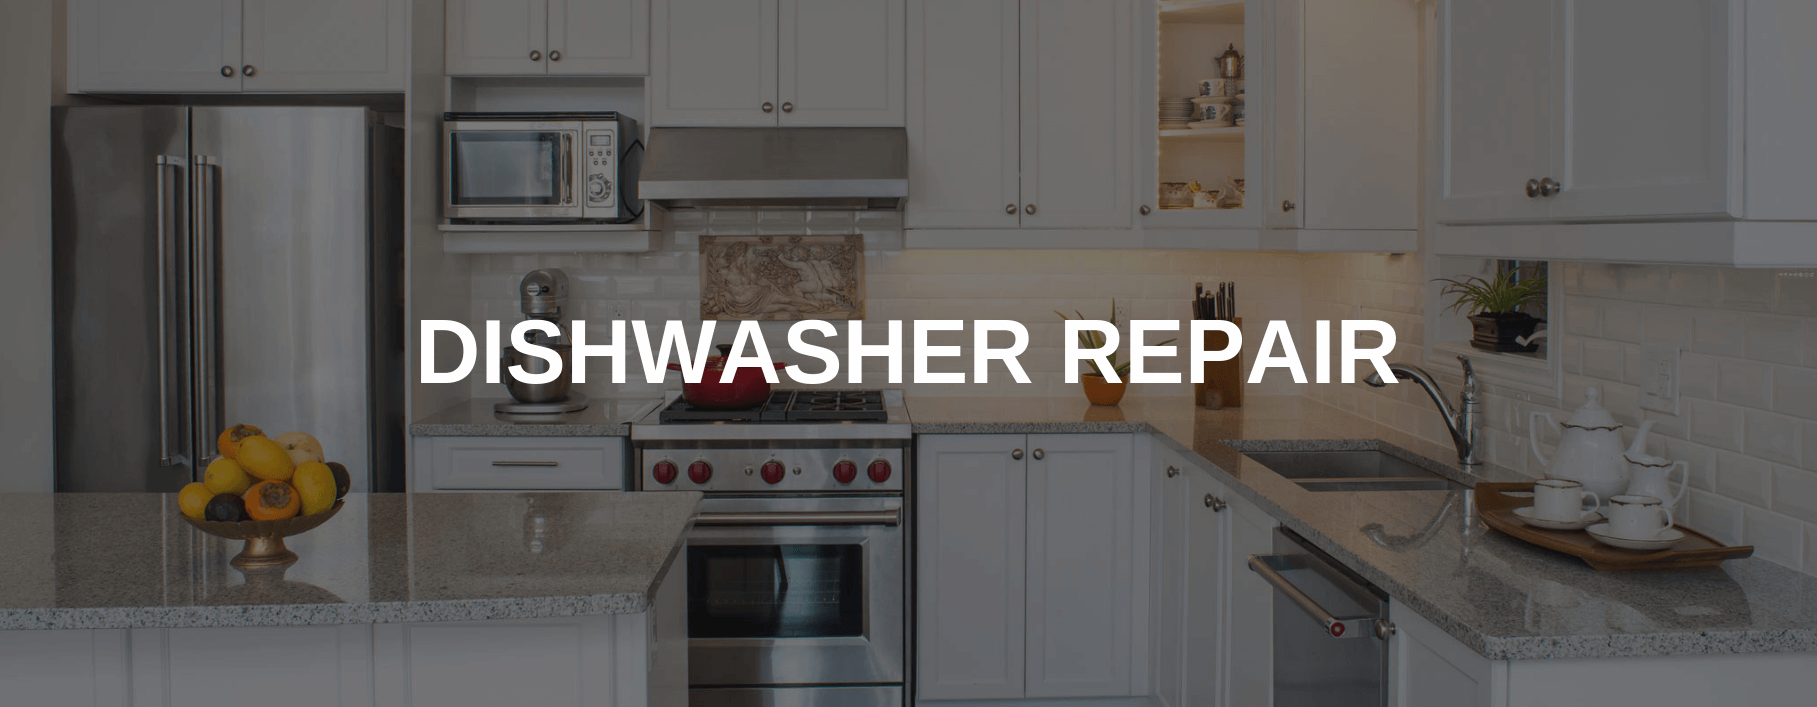 dishwasher repair new brunswick